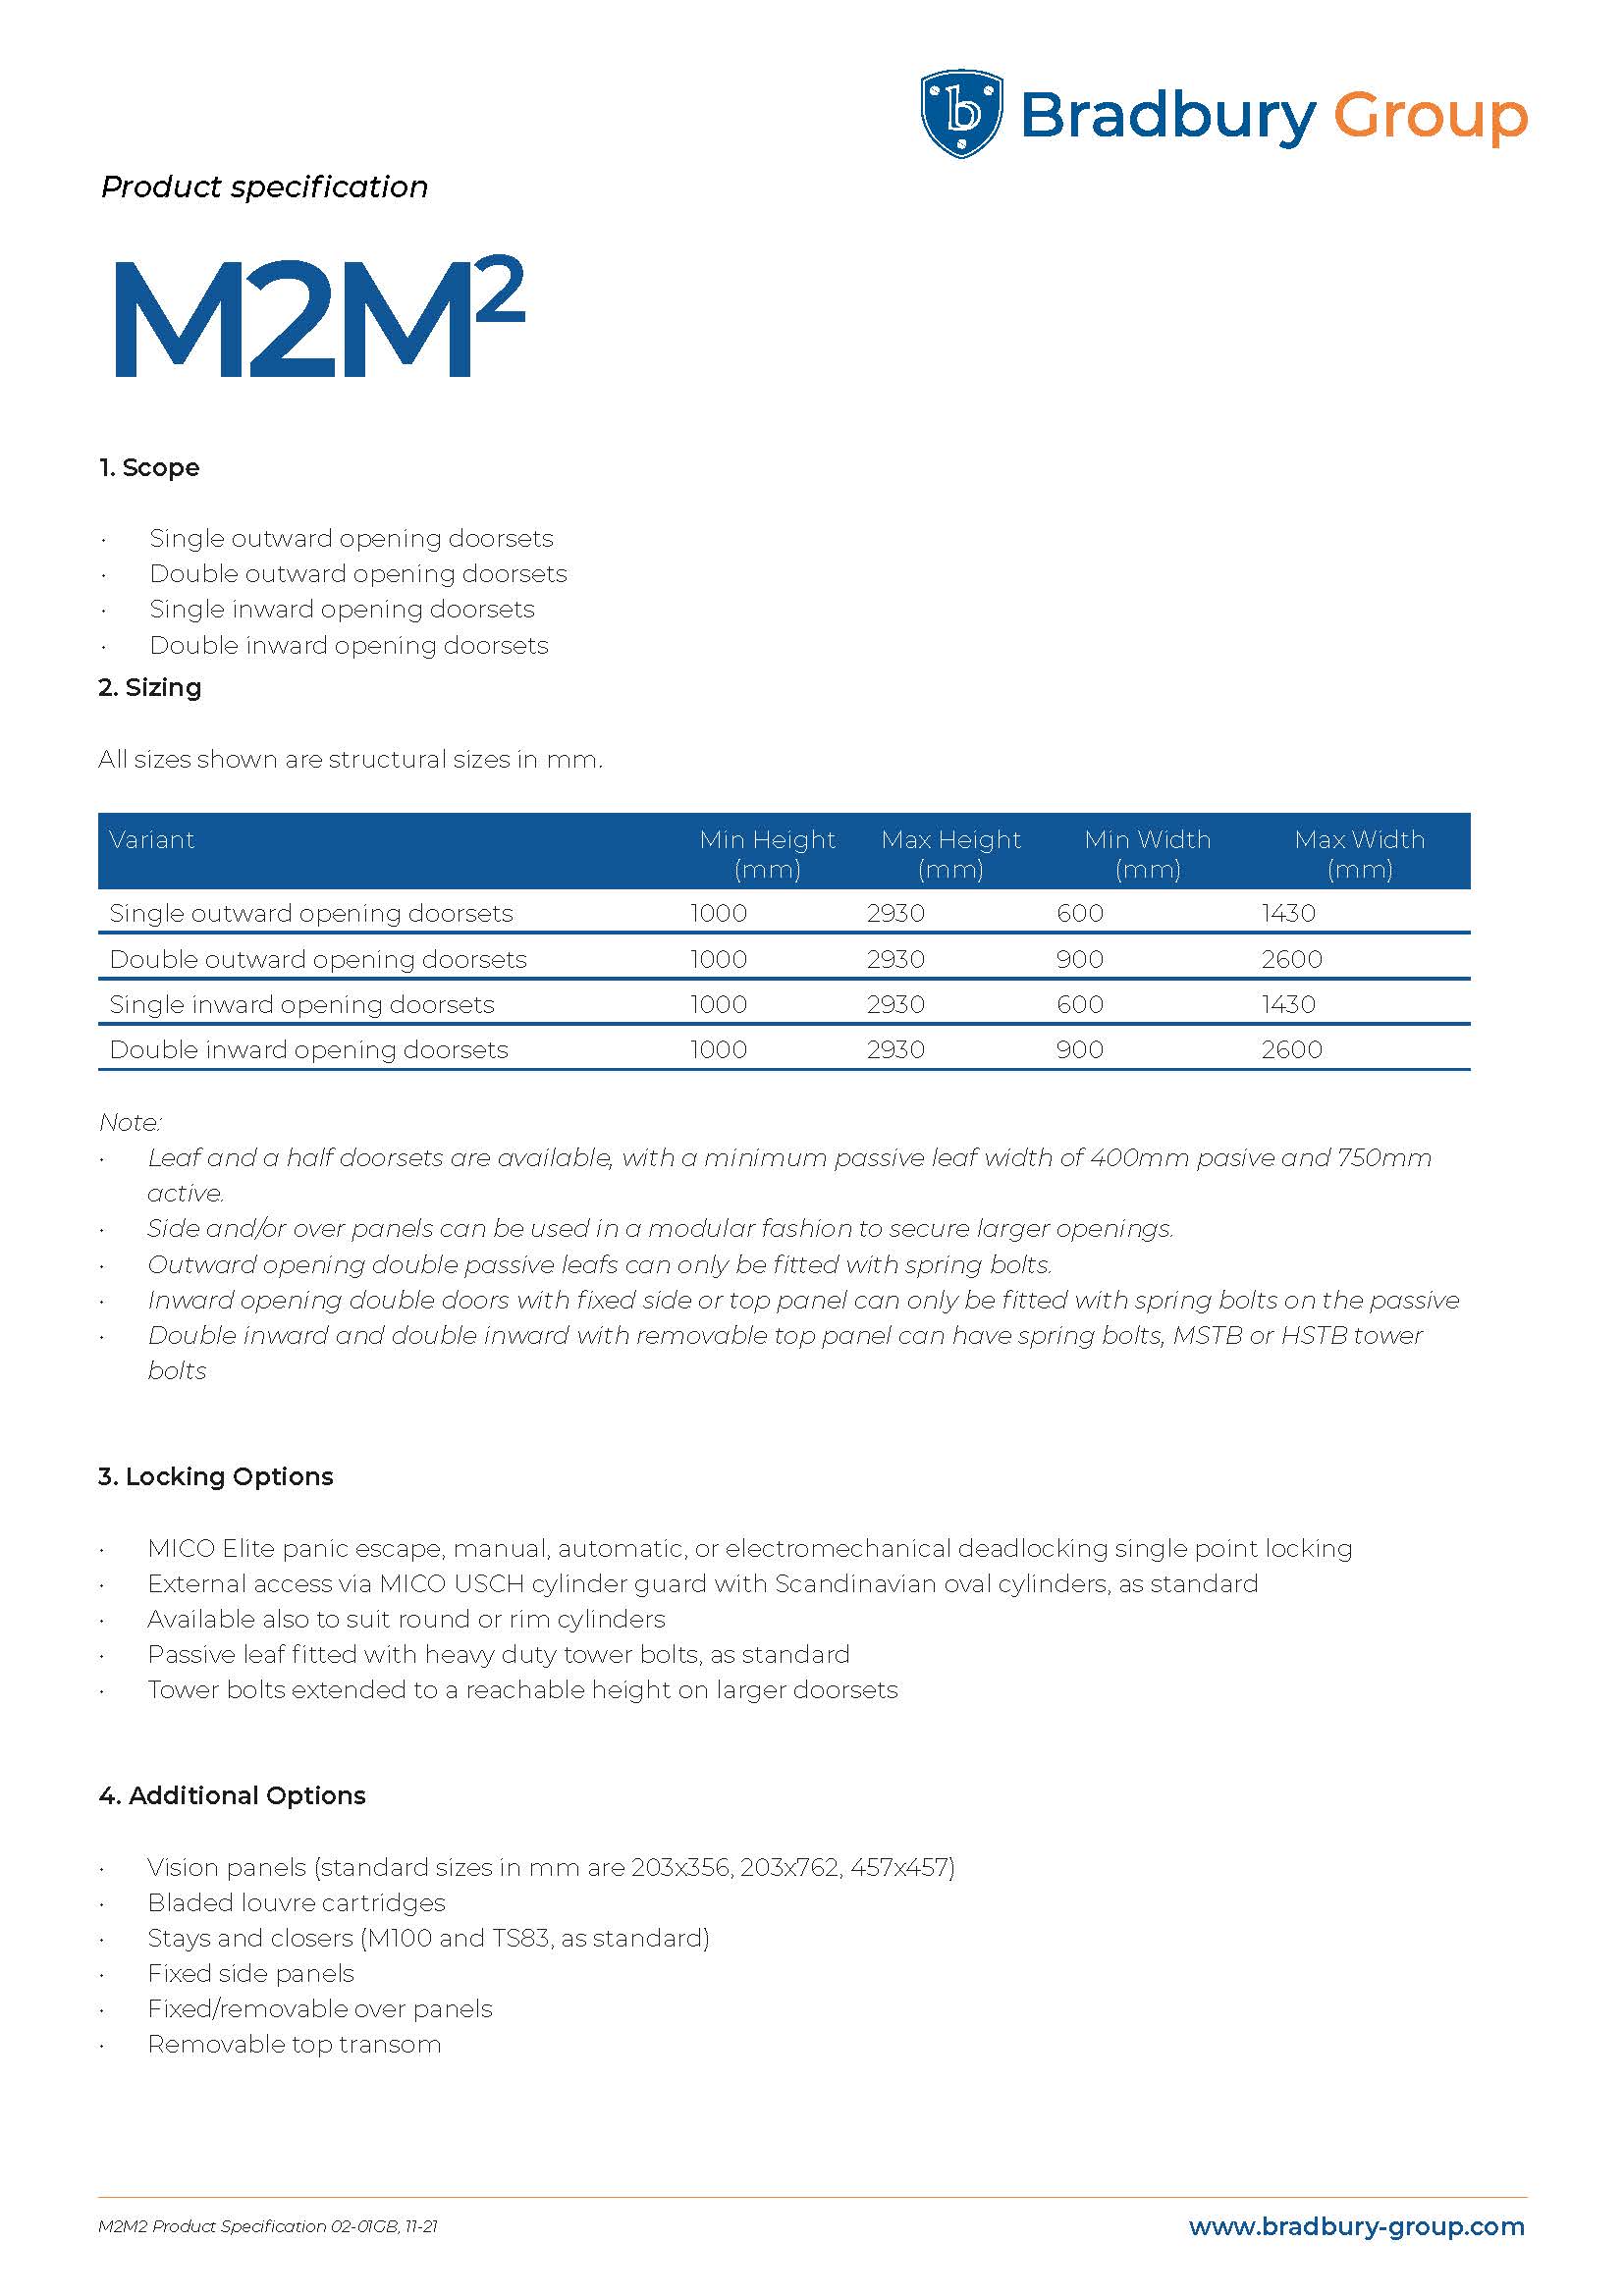 M2M2 Steel doorset product specification